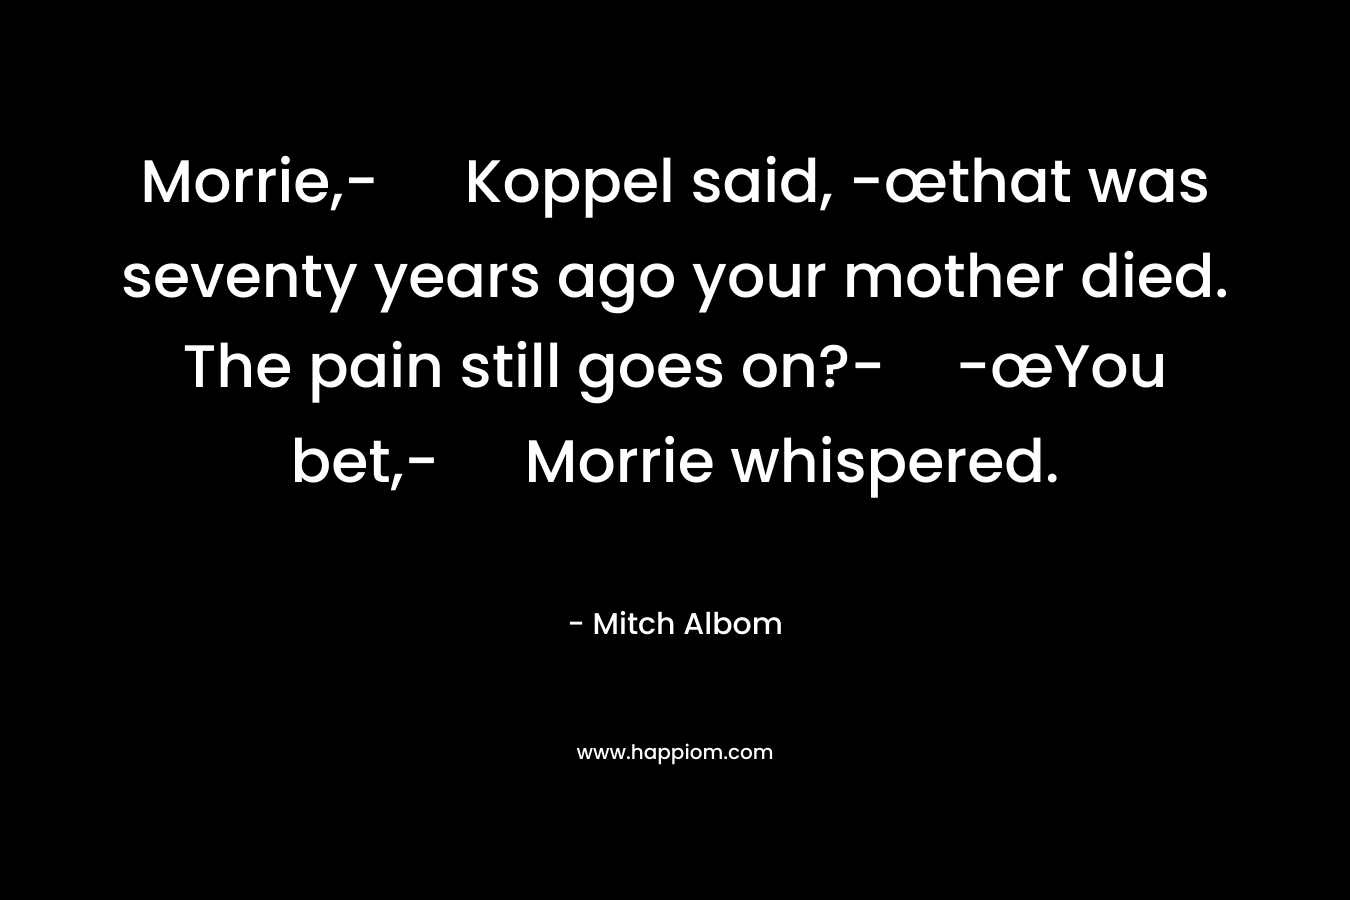 Morrie,- Koppel said, -œthat was seventy years ago your mother died. The pain still goes on?--œYou bet,- Morrie whispered.